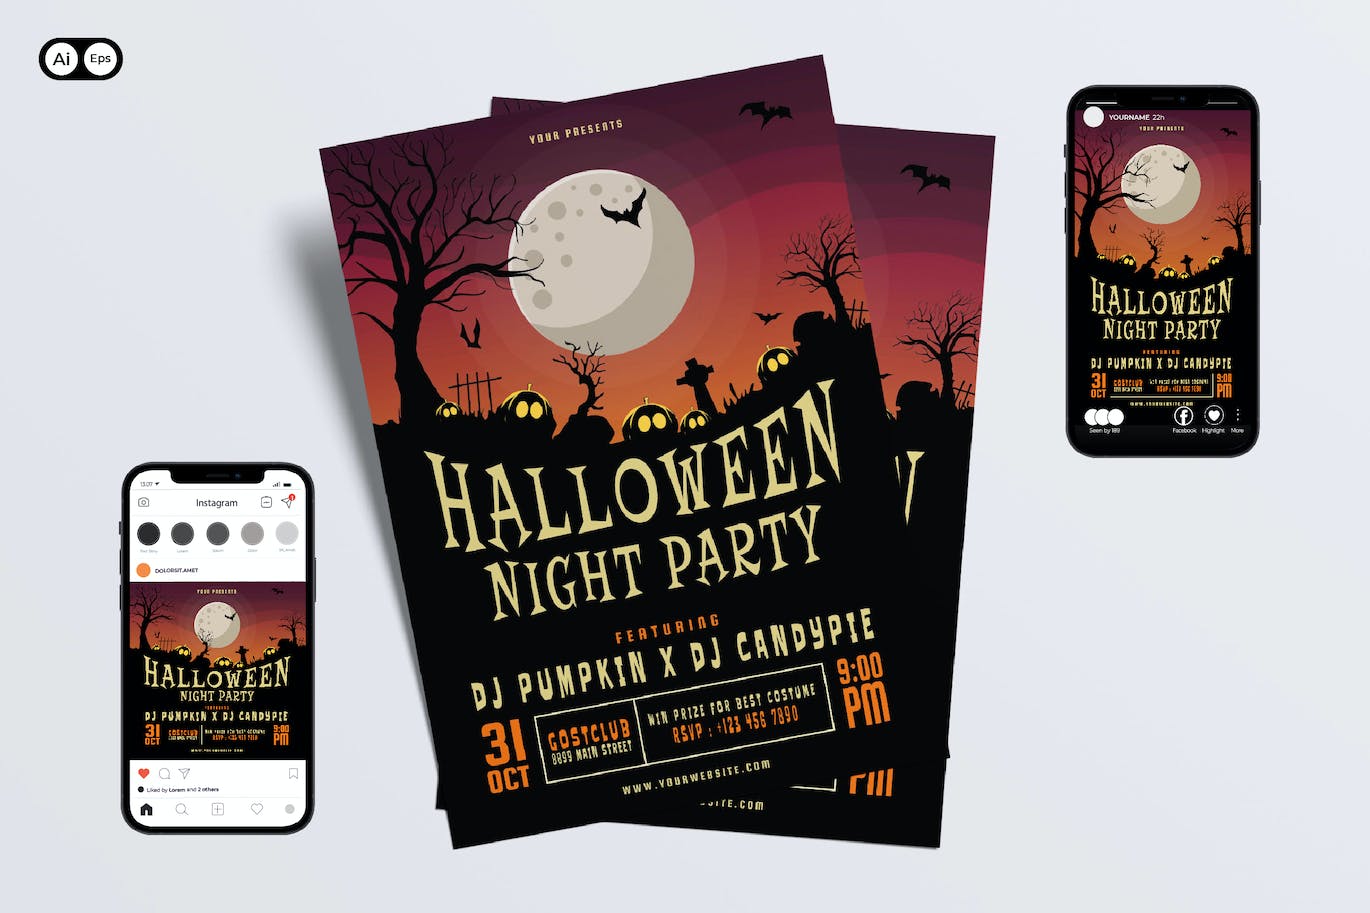 万圣节之夜派对宣传单模板 Halloween Night Party Flyer Set 设计素材 第1张